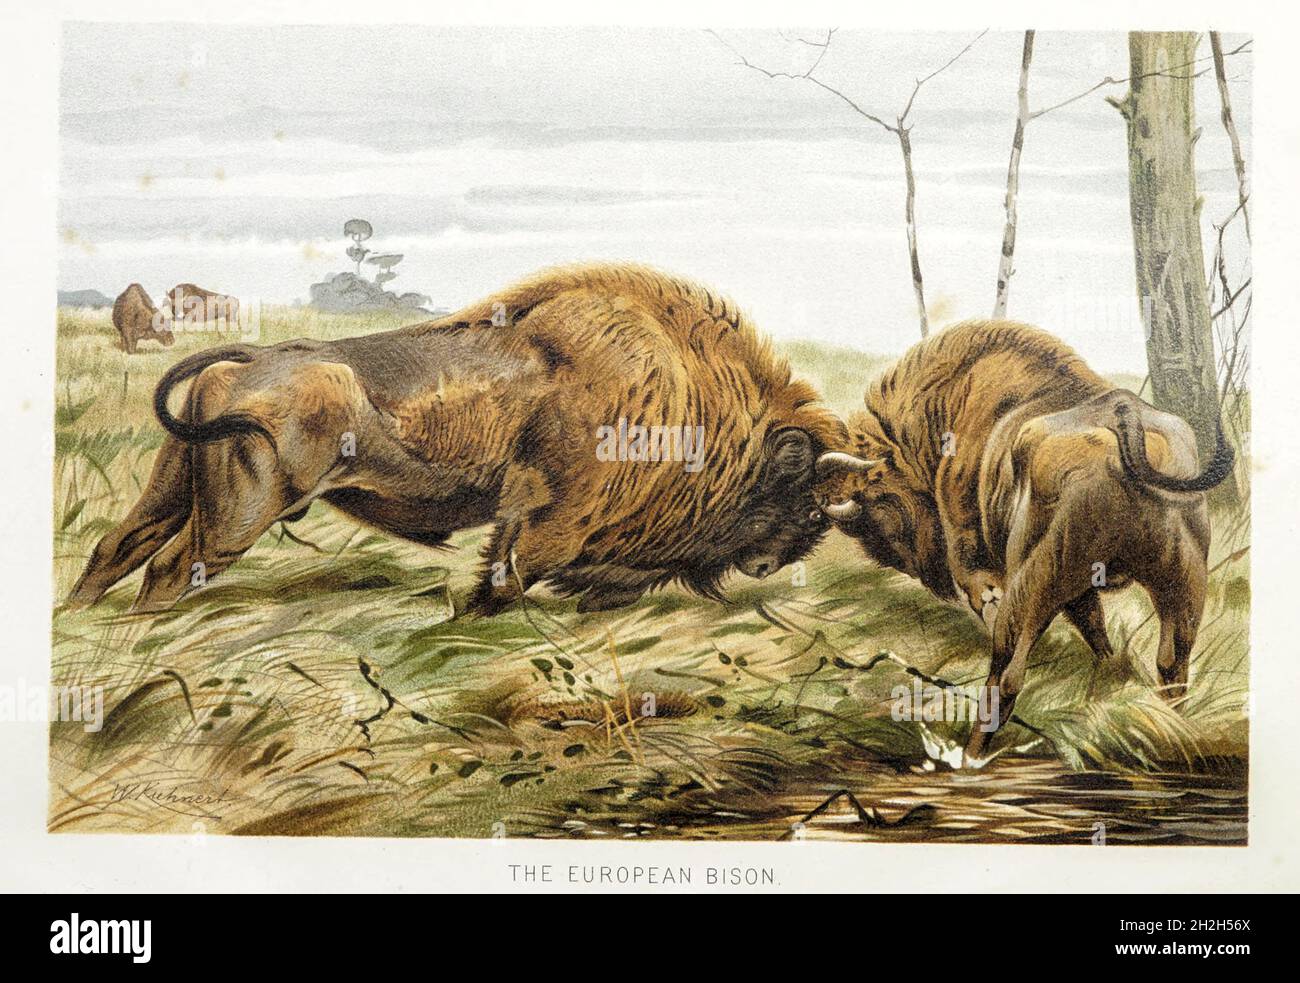 Il bisonte europeo (Bison bonasus) o il bisonte europeo del legno, noto anche come il wisent o lo zubr o colloquialmente il bufalo europeo, è una specie europea di bisonte. Dal libro " Royal Natural History " Volume 2 a cura di Richard Lydekker, pubblicato a Londra da Frederick Warne & Co nel 1893-1894 Foto Stock